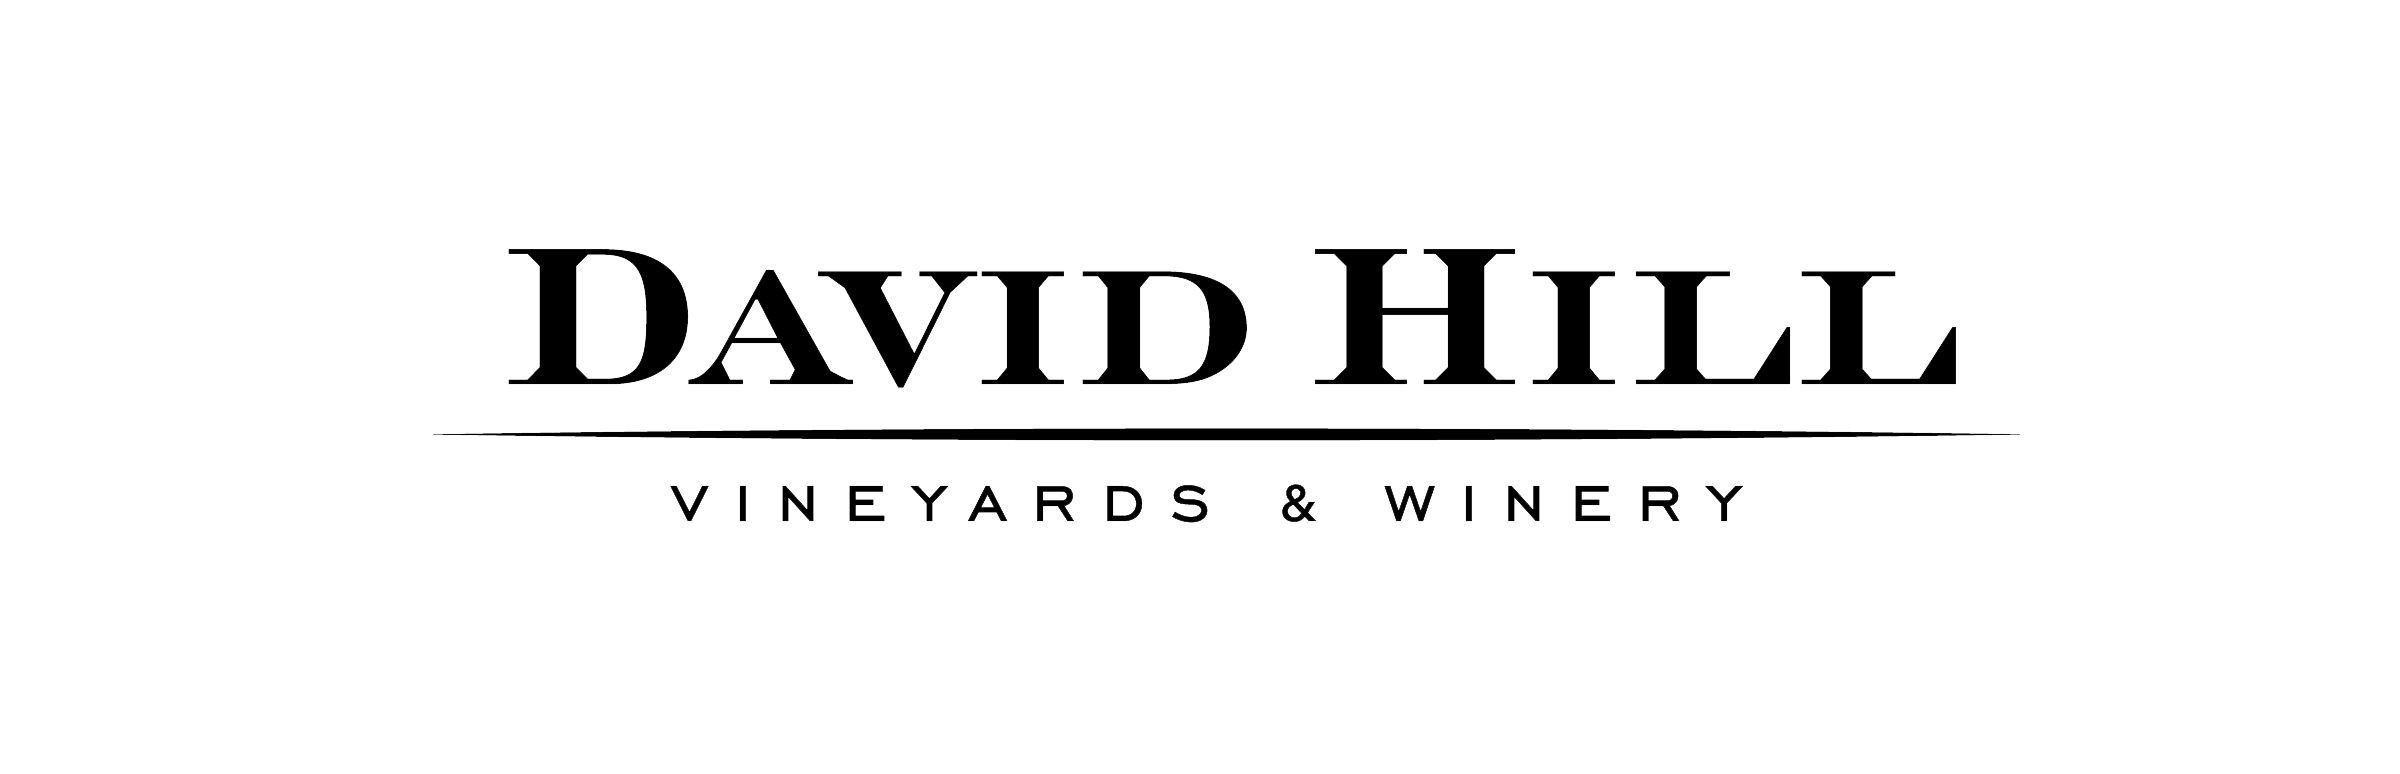 Winery Logo - david hill vineyard & winery - DavidHillWinery